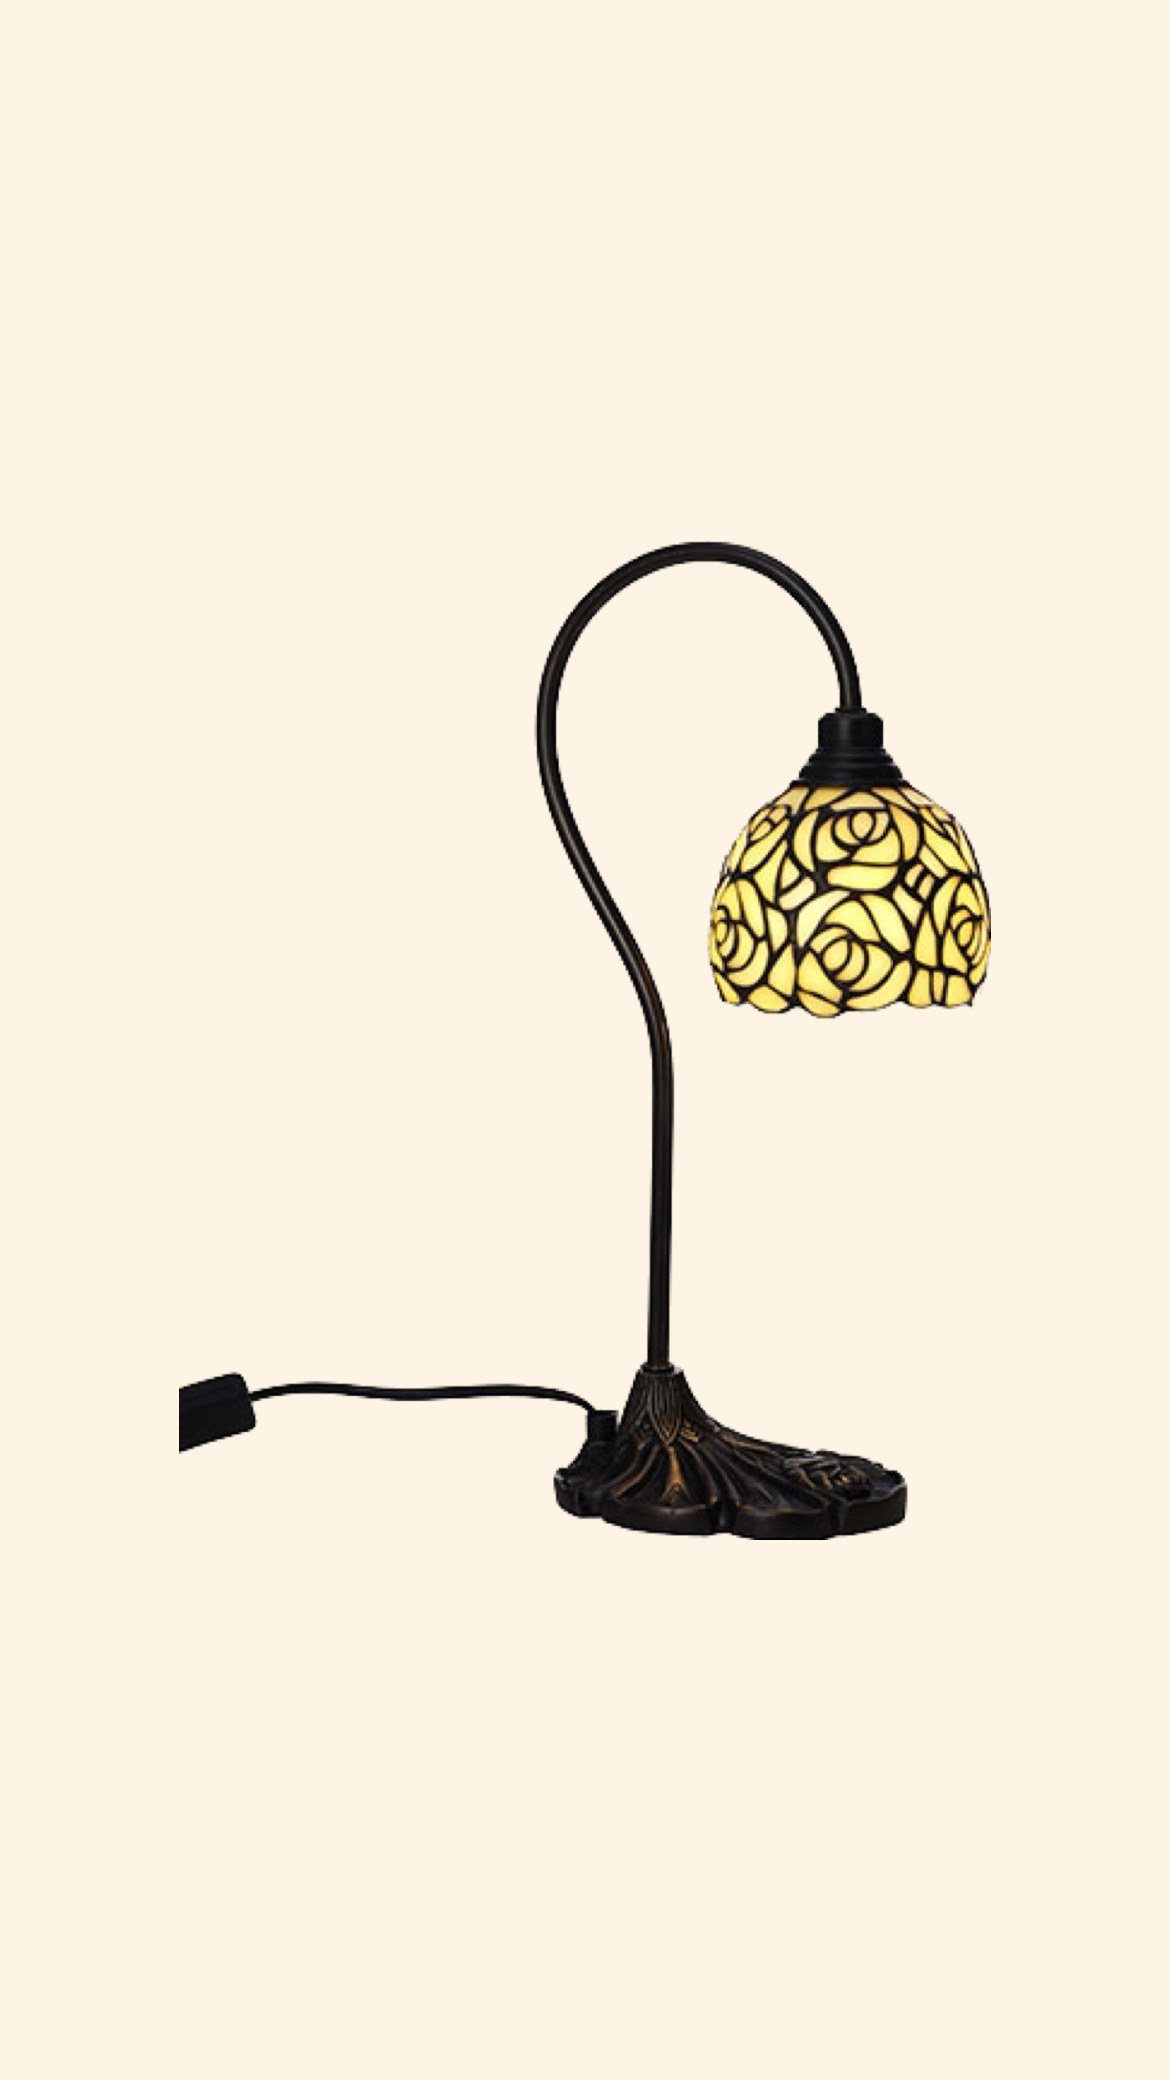 Tiffany Bordslampa Rosita med böjd arm 13 cm